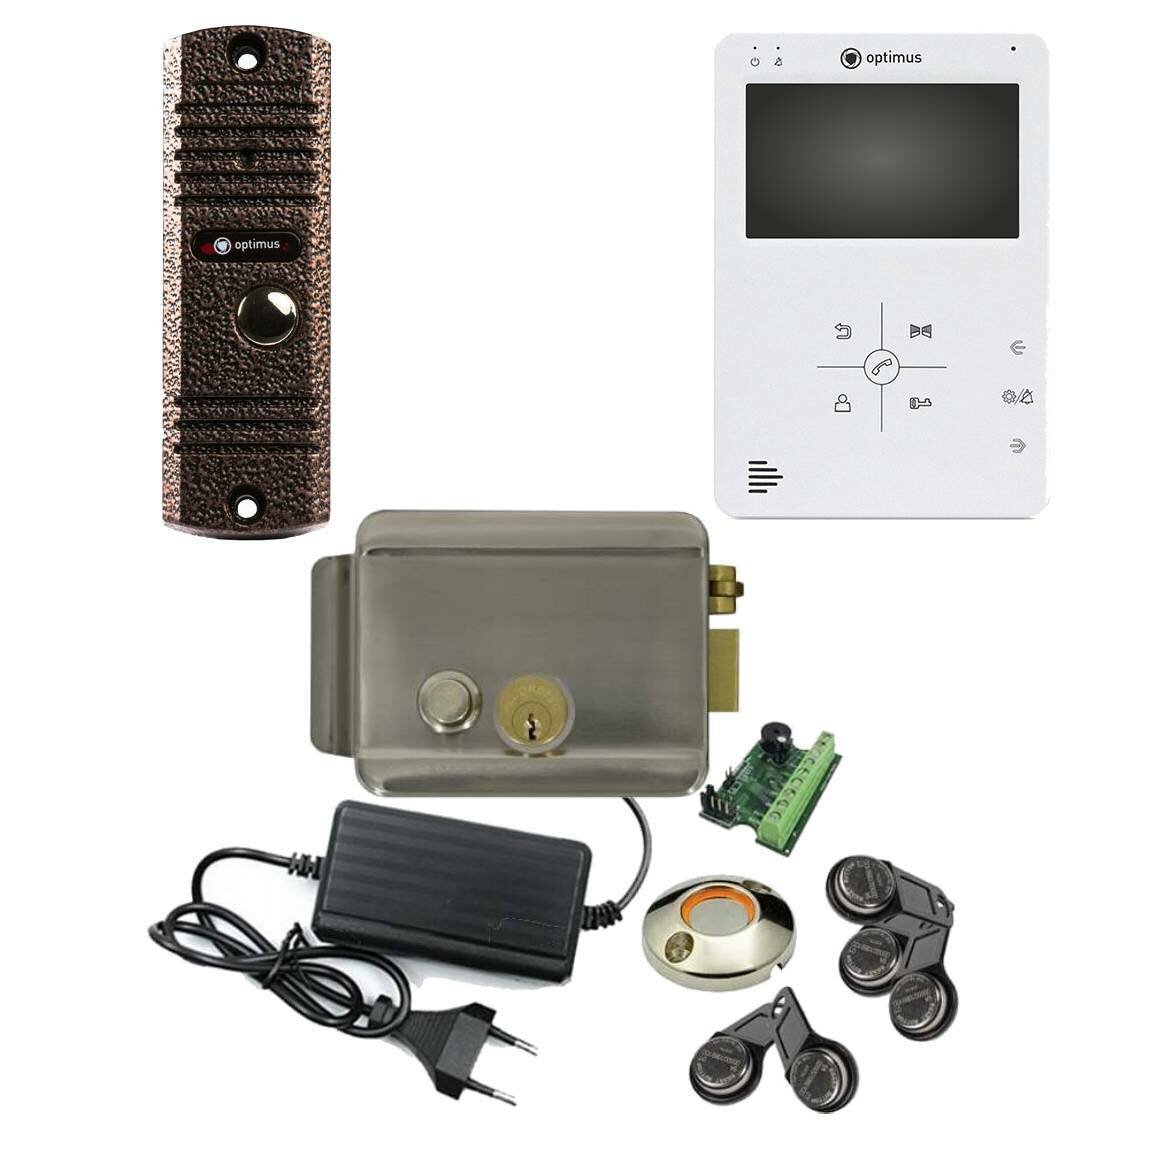 Комплект СКУД с электромагнитным замком и домофоном на 1 дверь